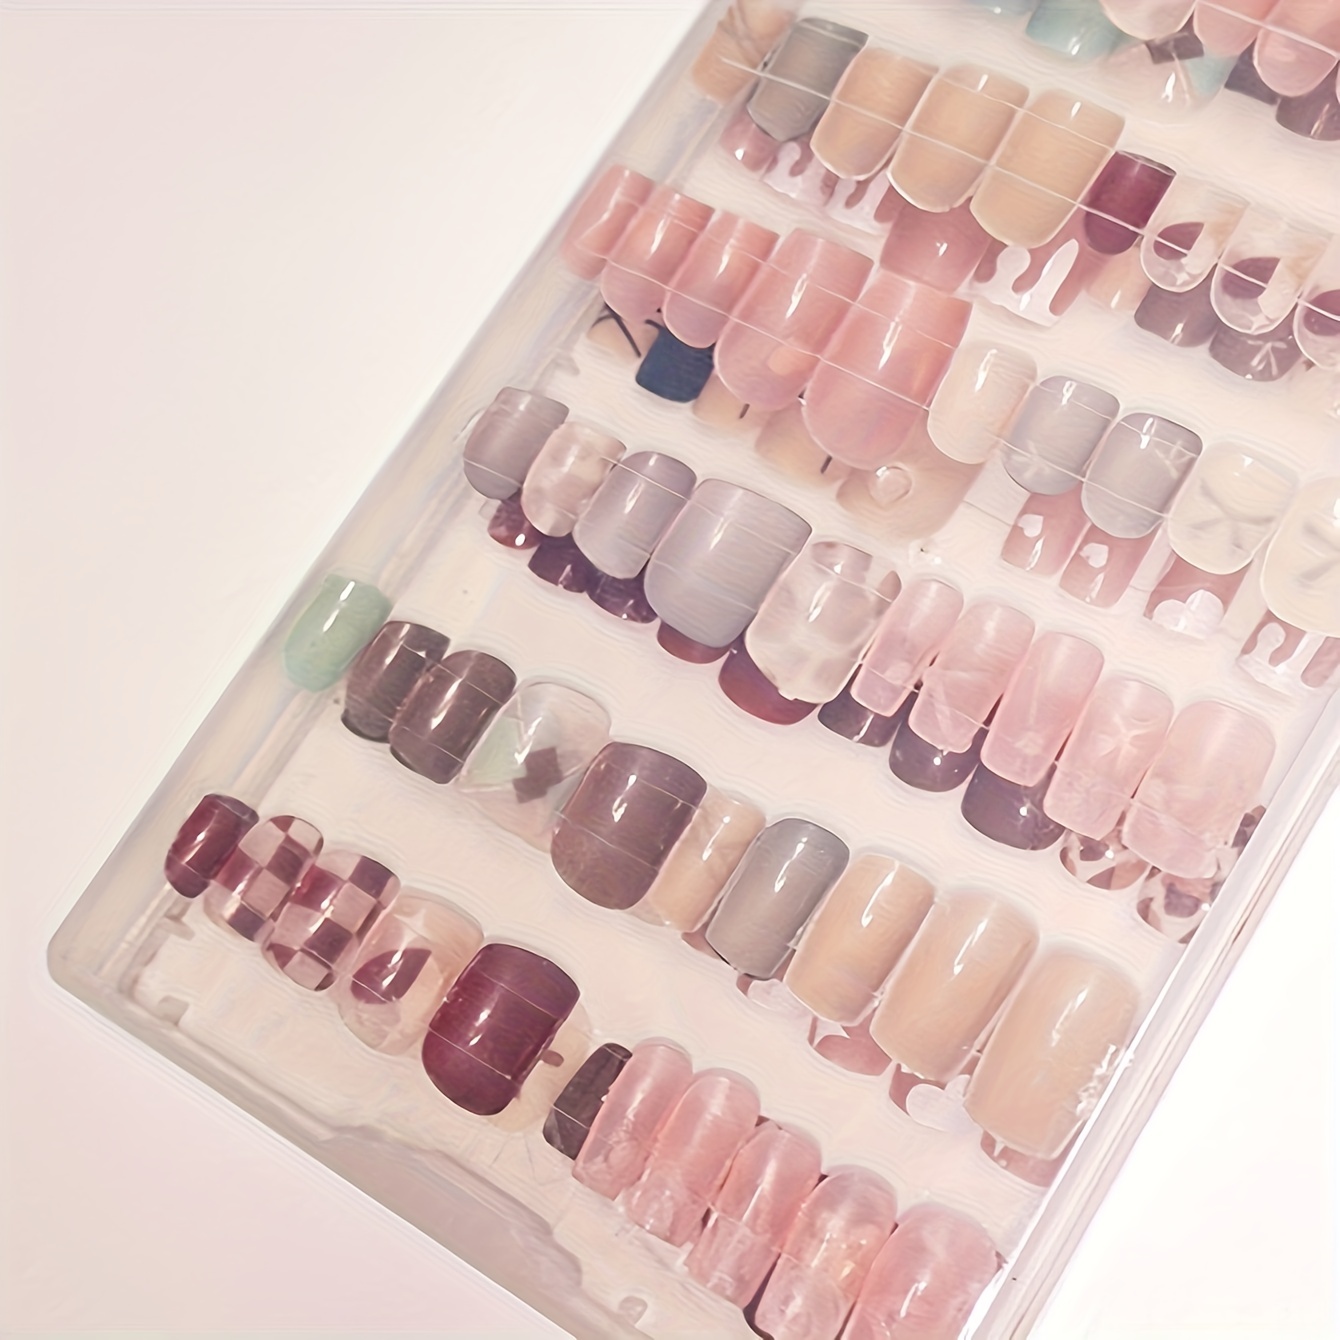 storage to keep your nail supplies｜TikTok Search